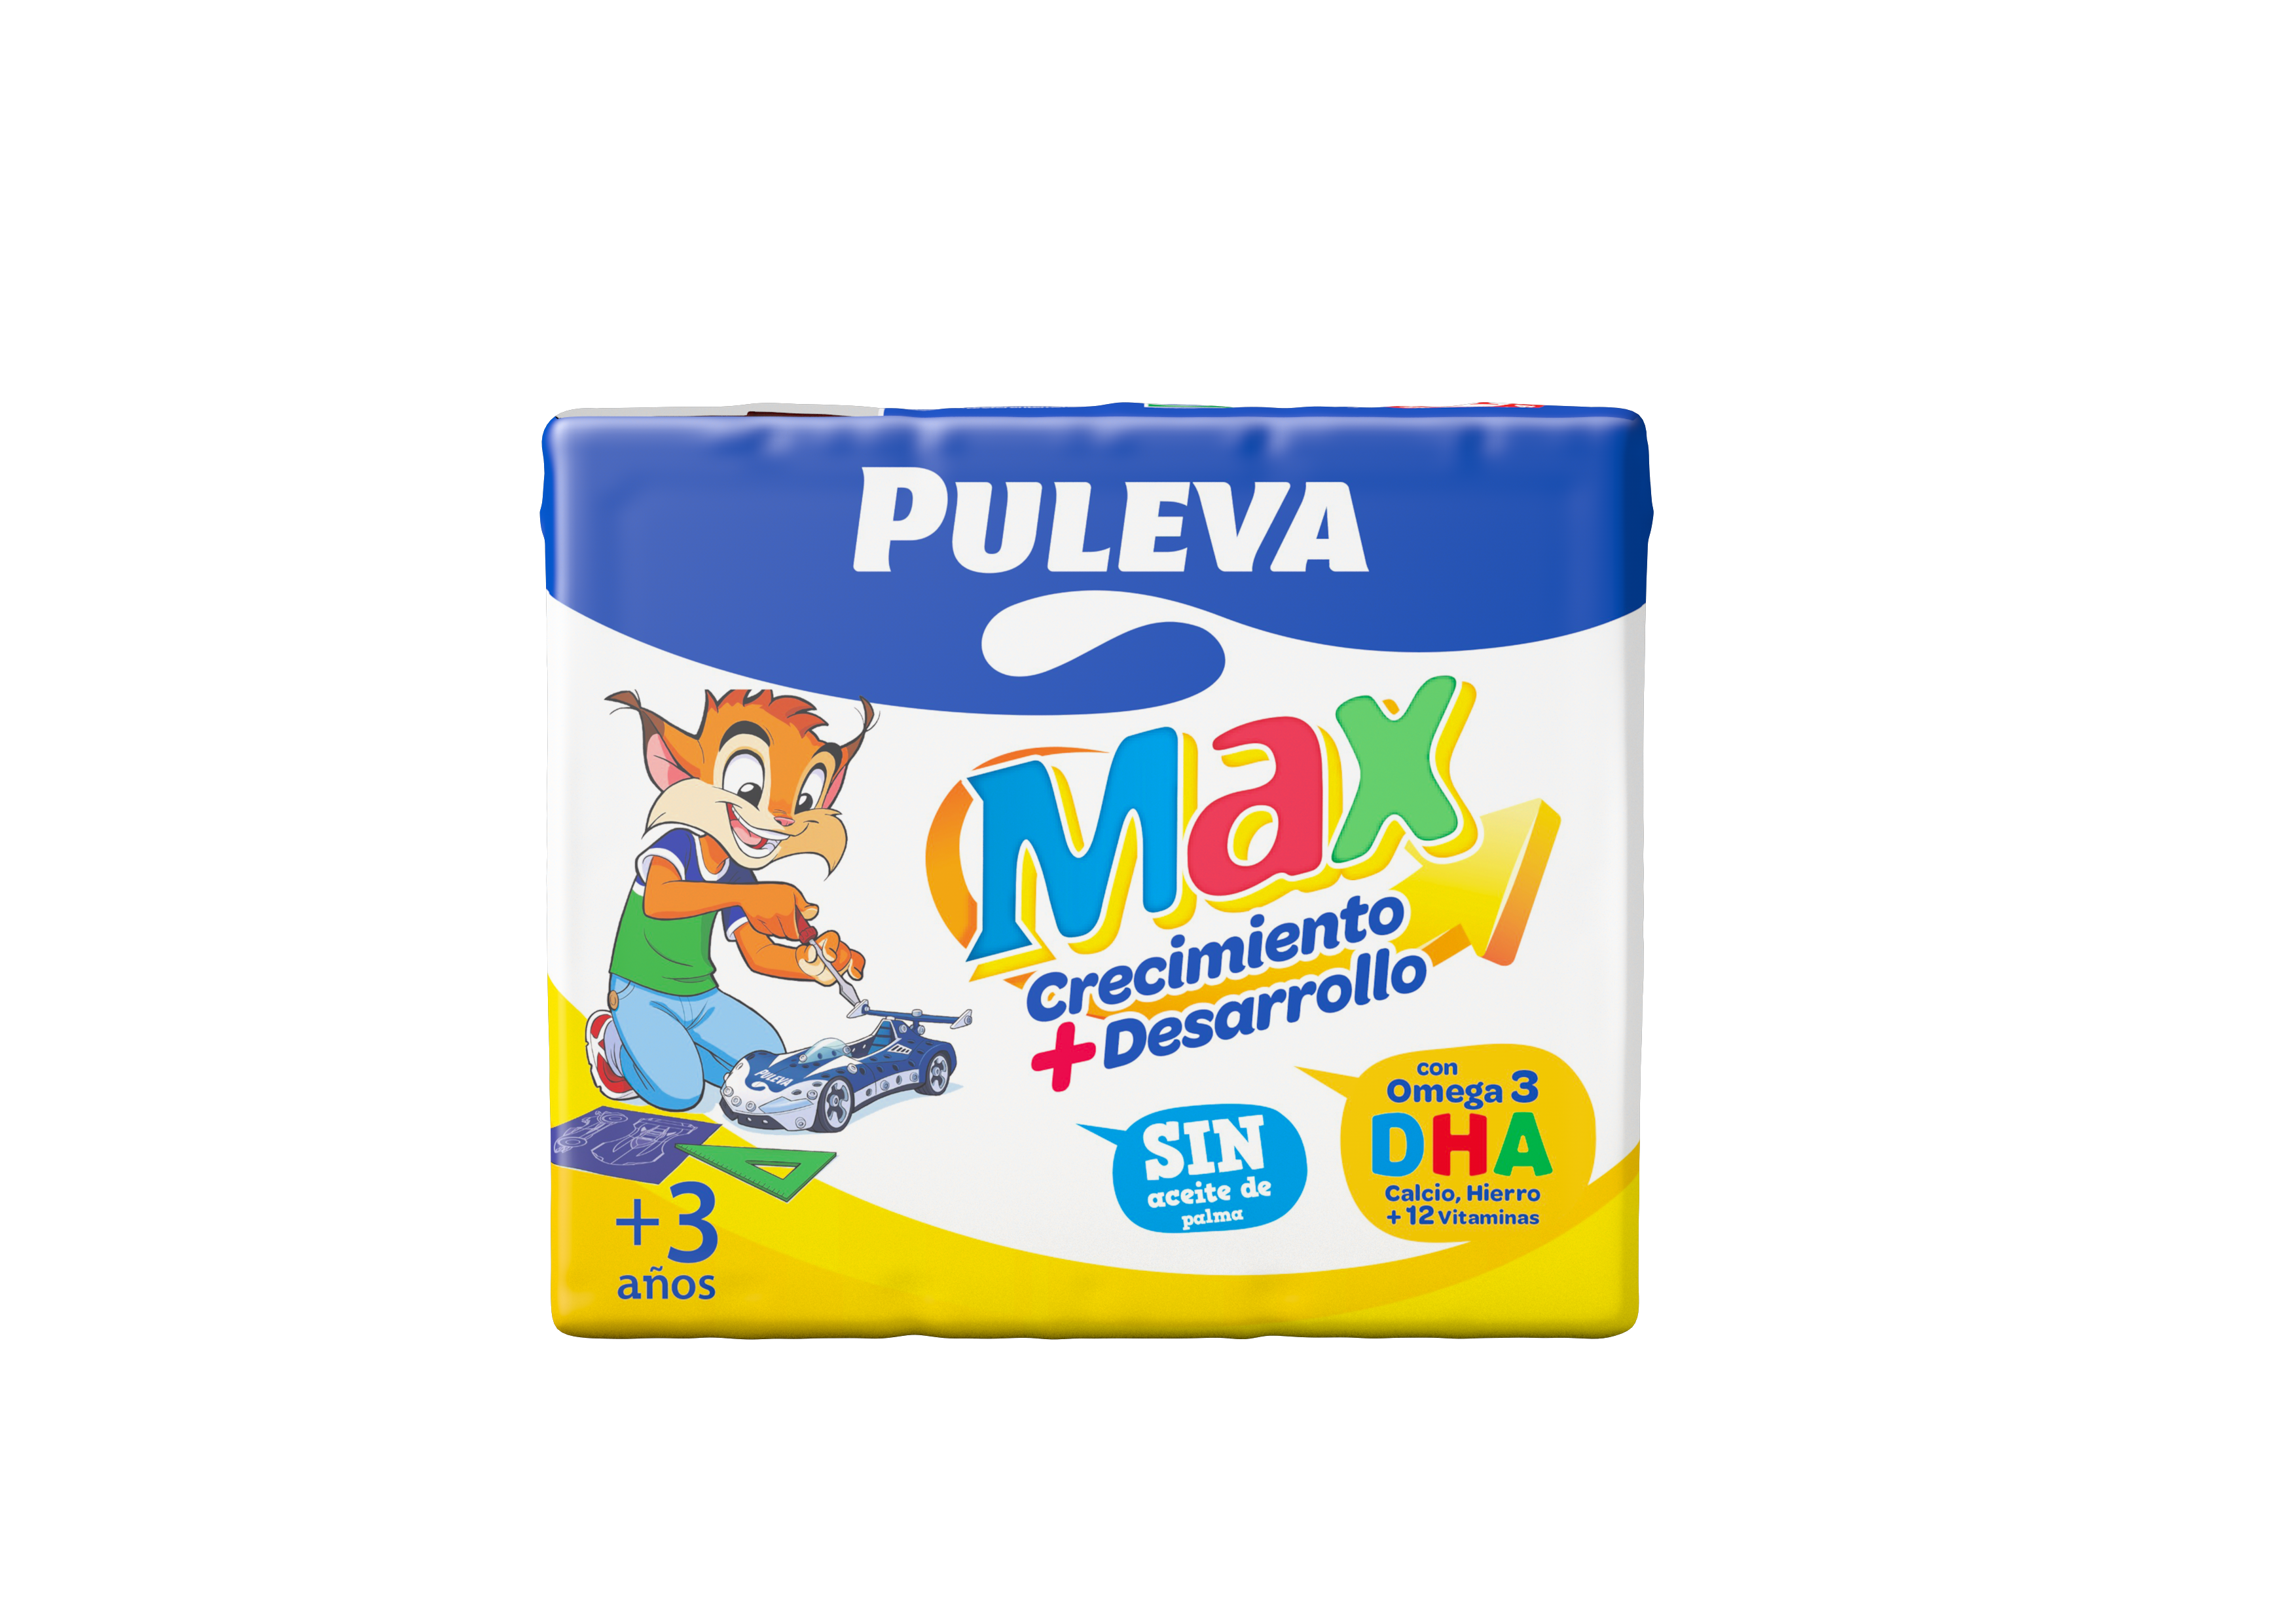 Puleva on X: ¿Tienes tu ESTUCHE y BOLÍGRAFO MÁGICO de Maxi? Por la compra  de 1 CAJA DE PULEVA MAX 1 LITRO. Establecimientos adheridos en los  comentarios.  / X